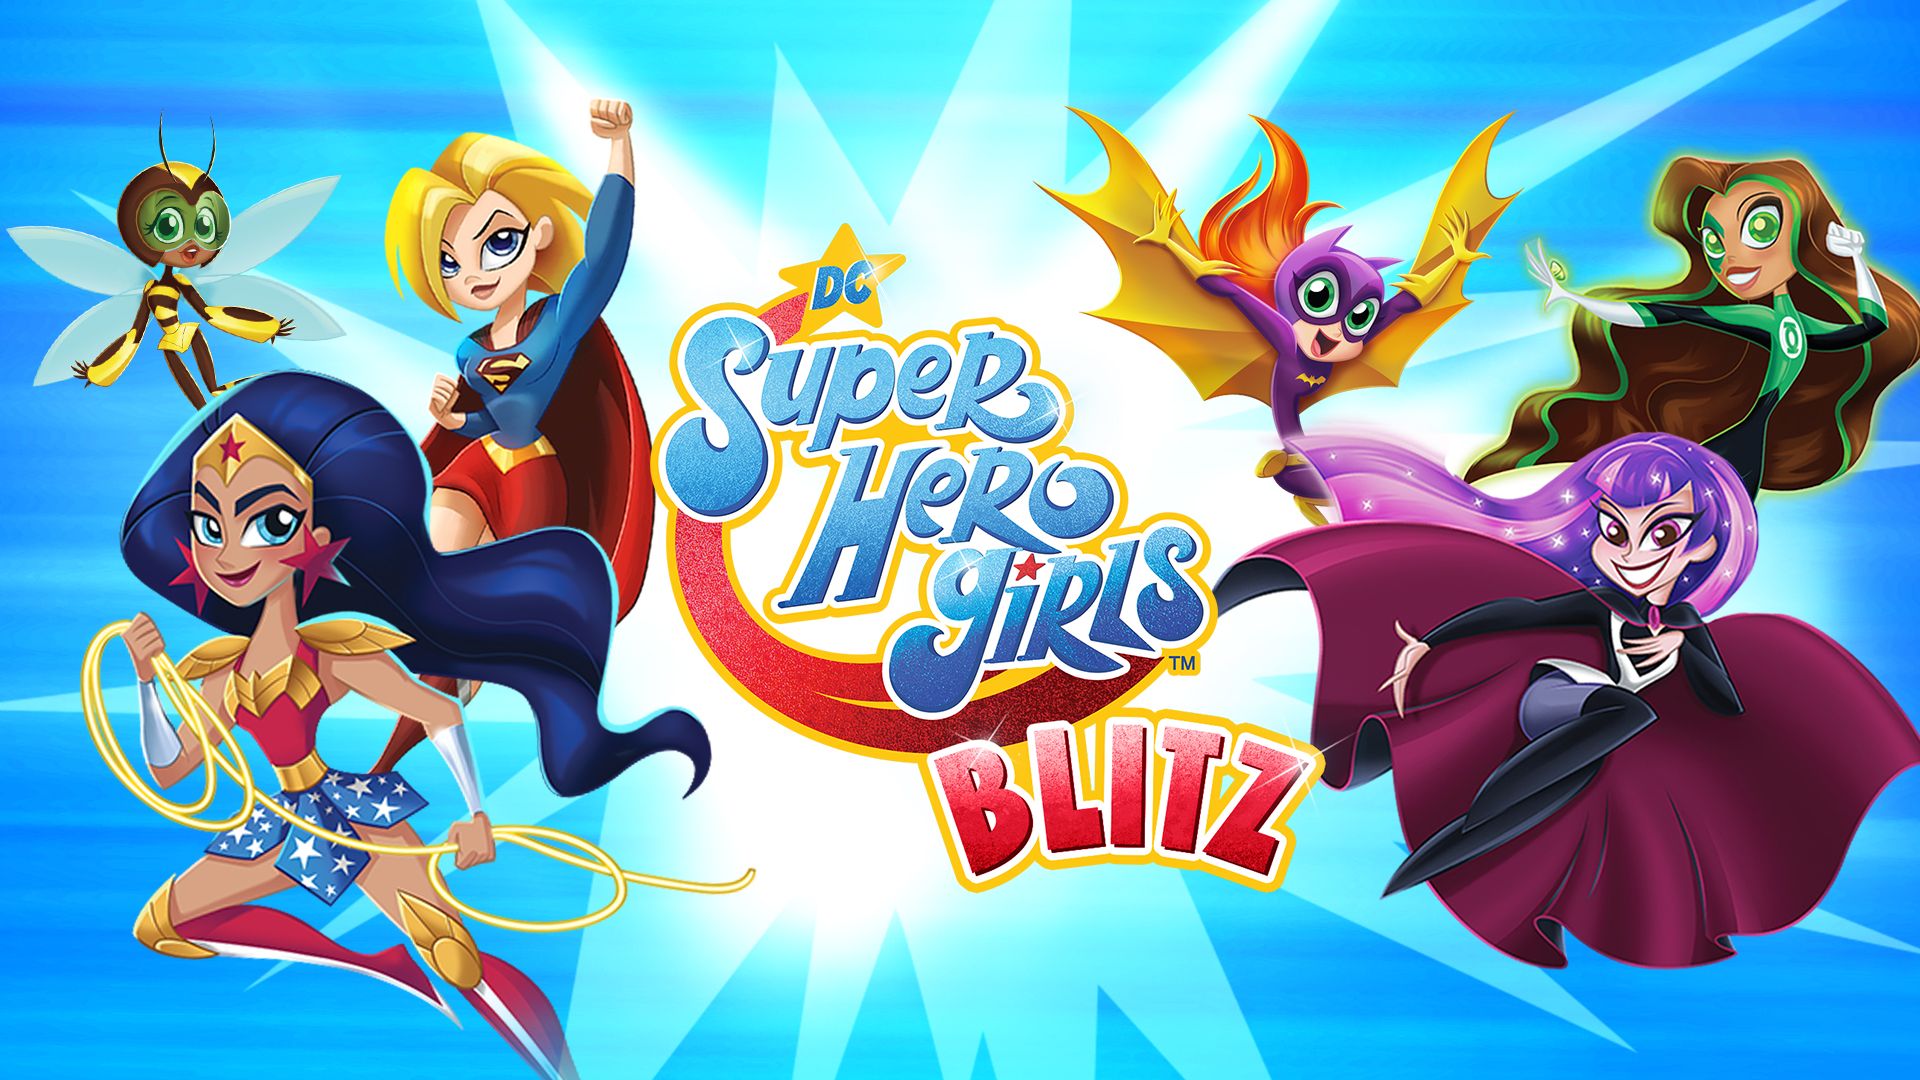 DC Super Hero Girls Blitz Studios—Mobile Apps For Kids